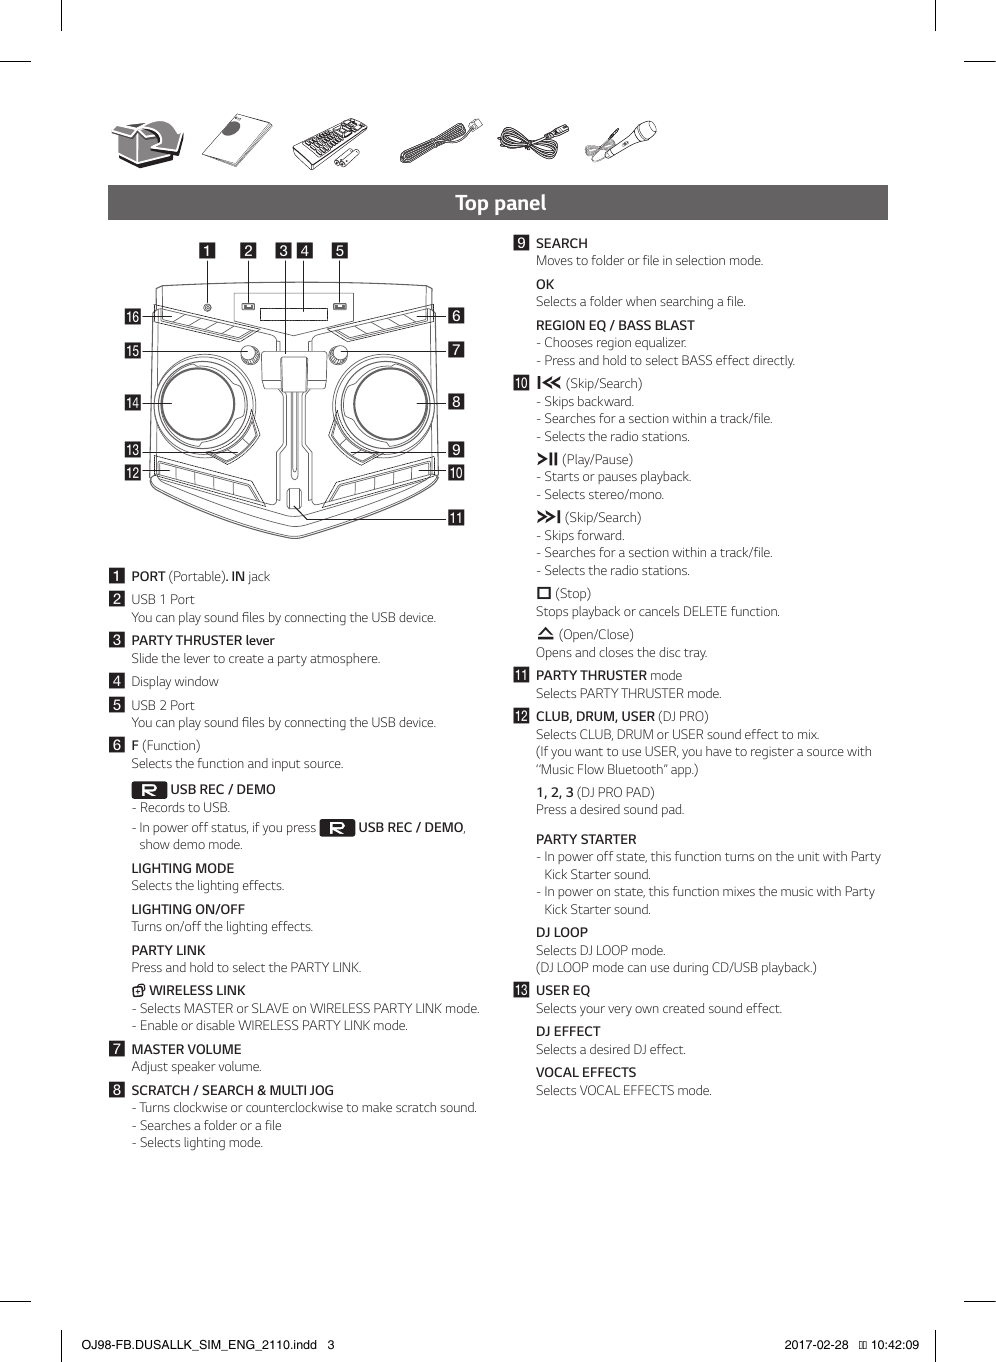 Page 3 of 6 - LG OJ98 User Manual Guide OJ98-FB.DUSALLK SIMPLE ENG MFL69712110